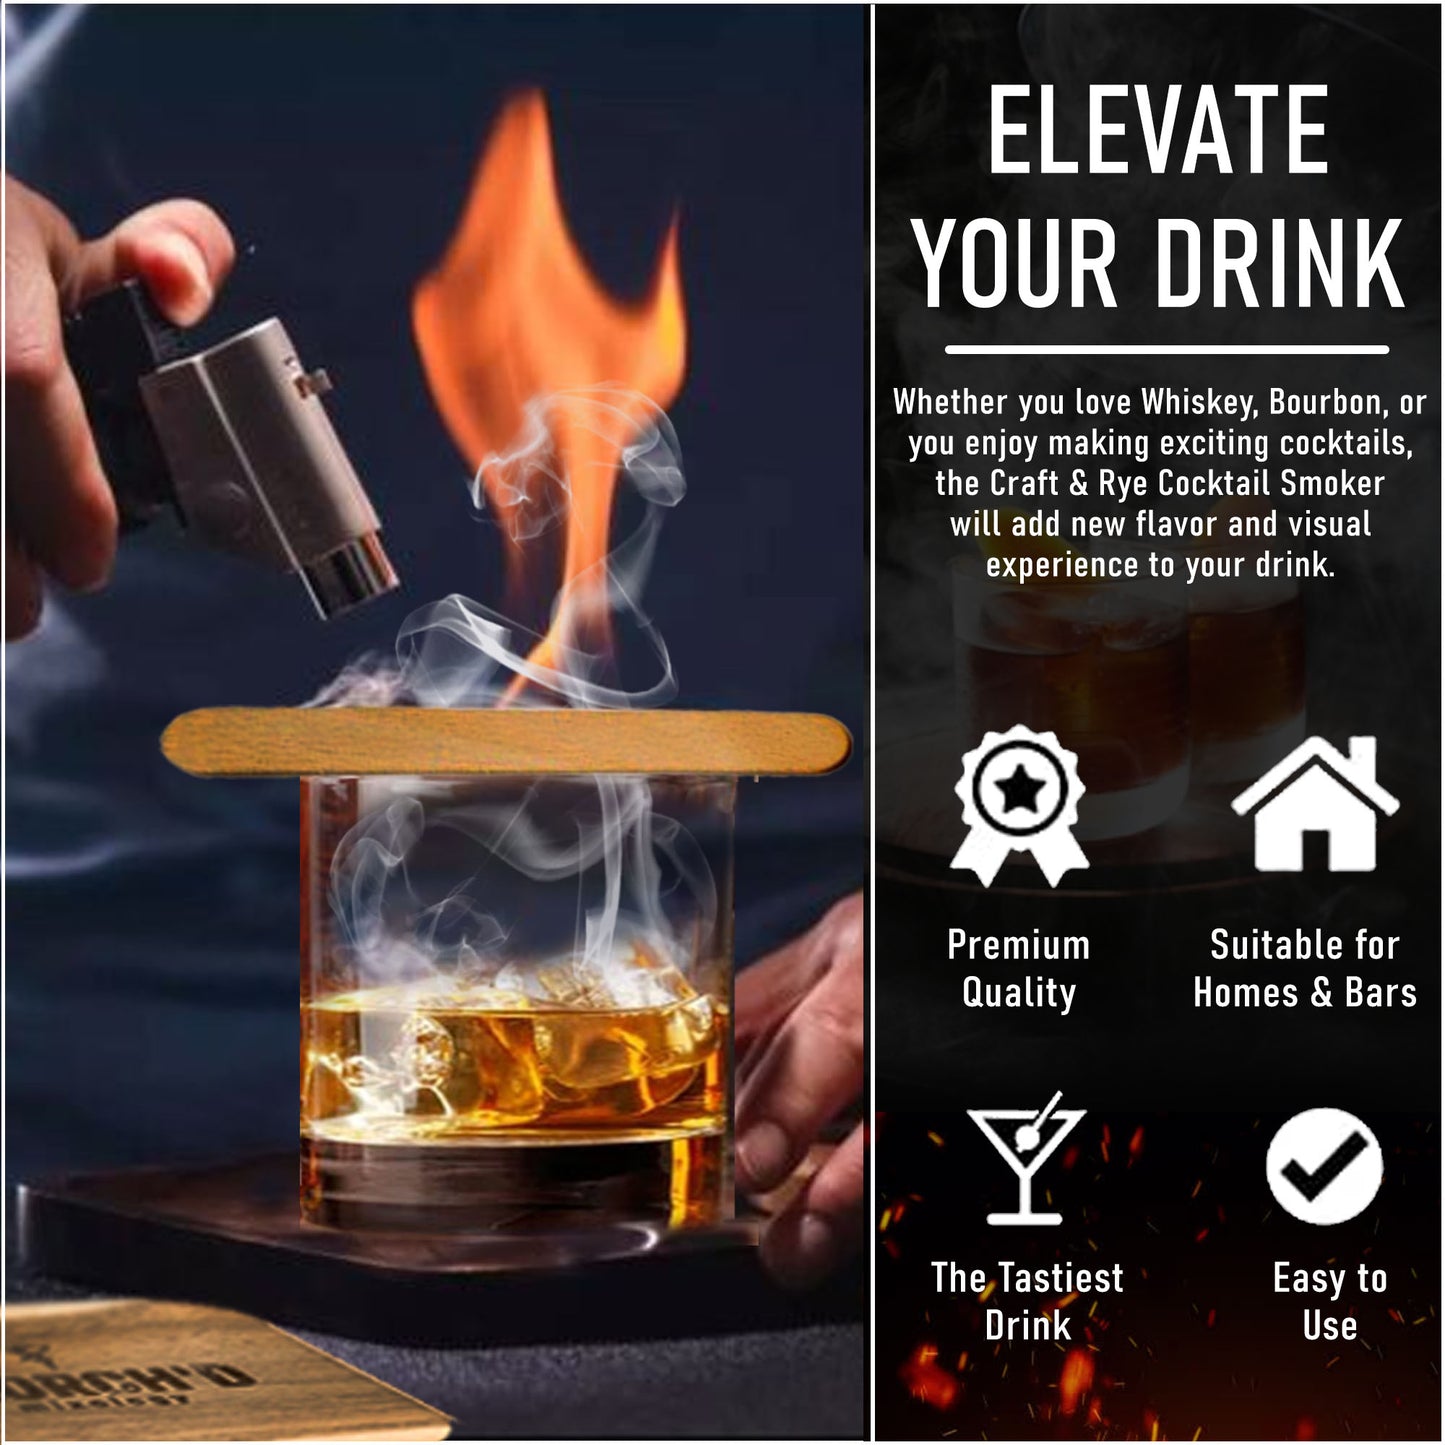 Premium Large Cocktail Smoker Kit – Skorch'd